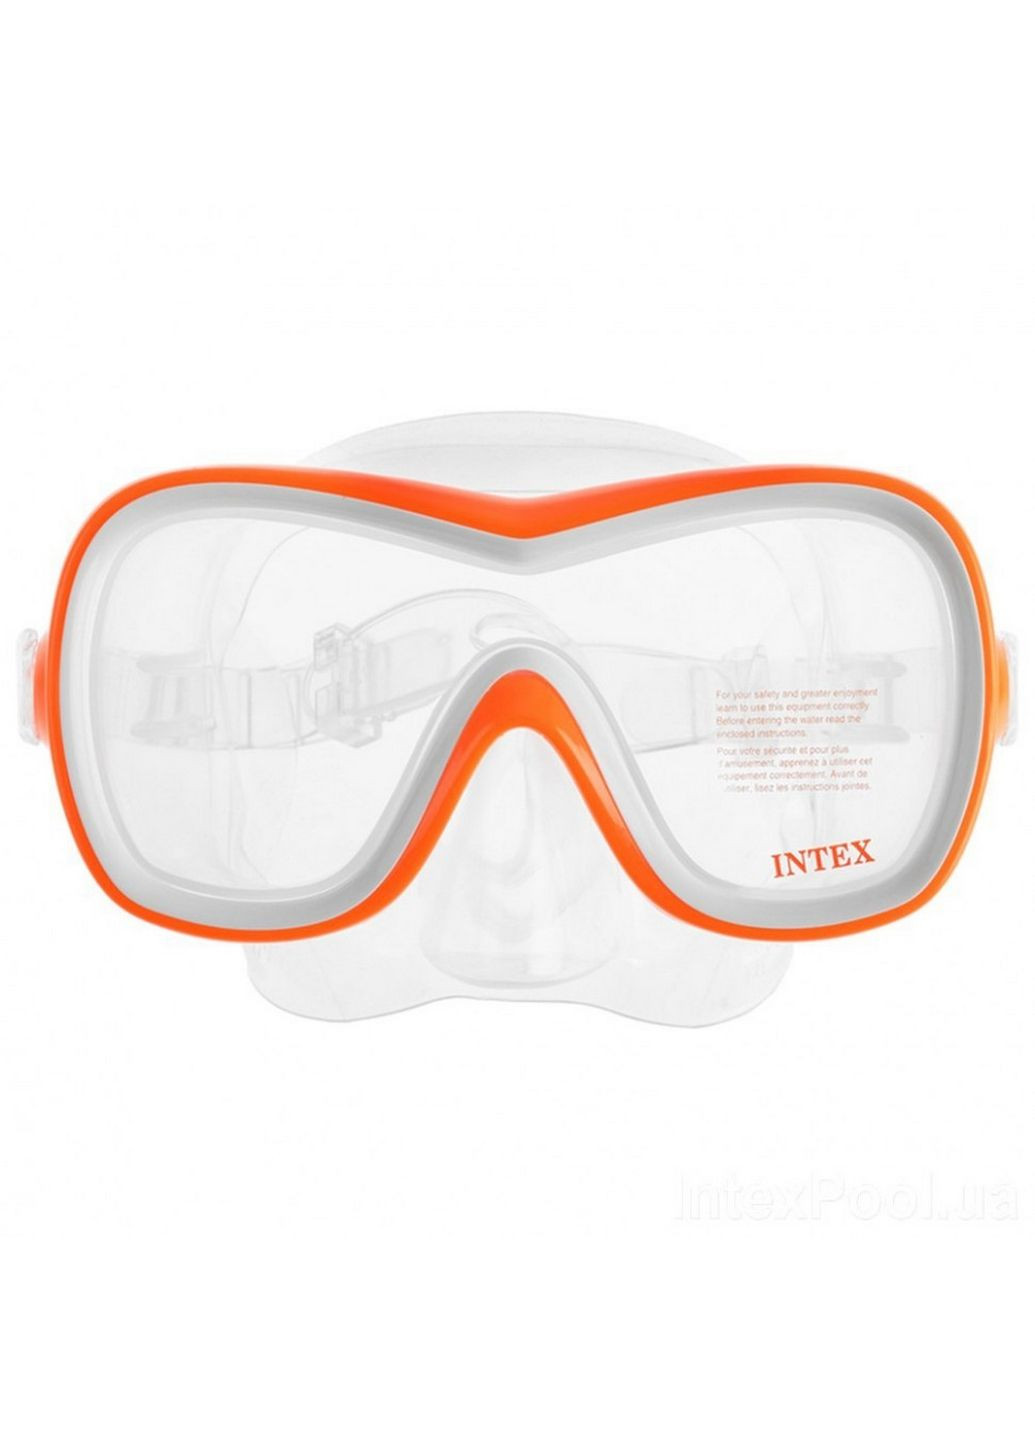 Набор для подводного плавания маска + трубка Intex (288186137)